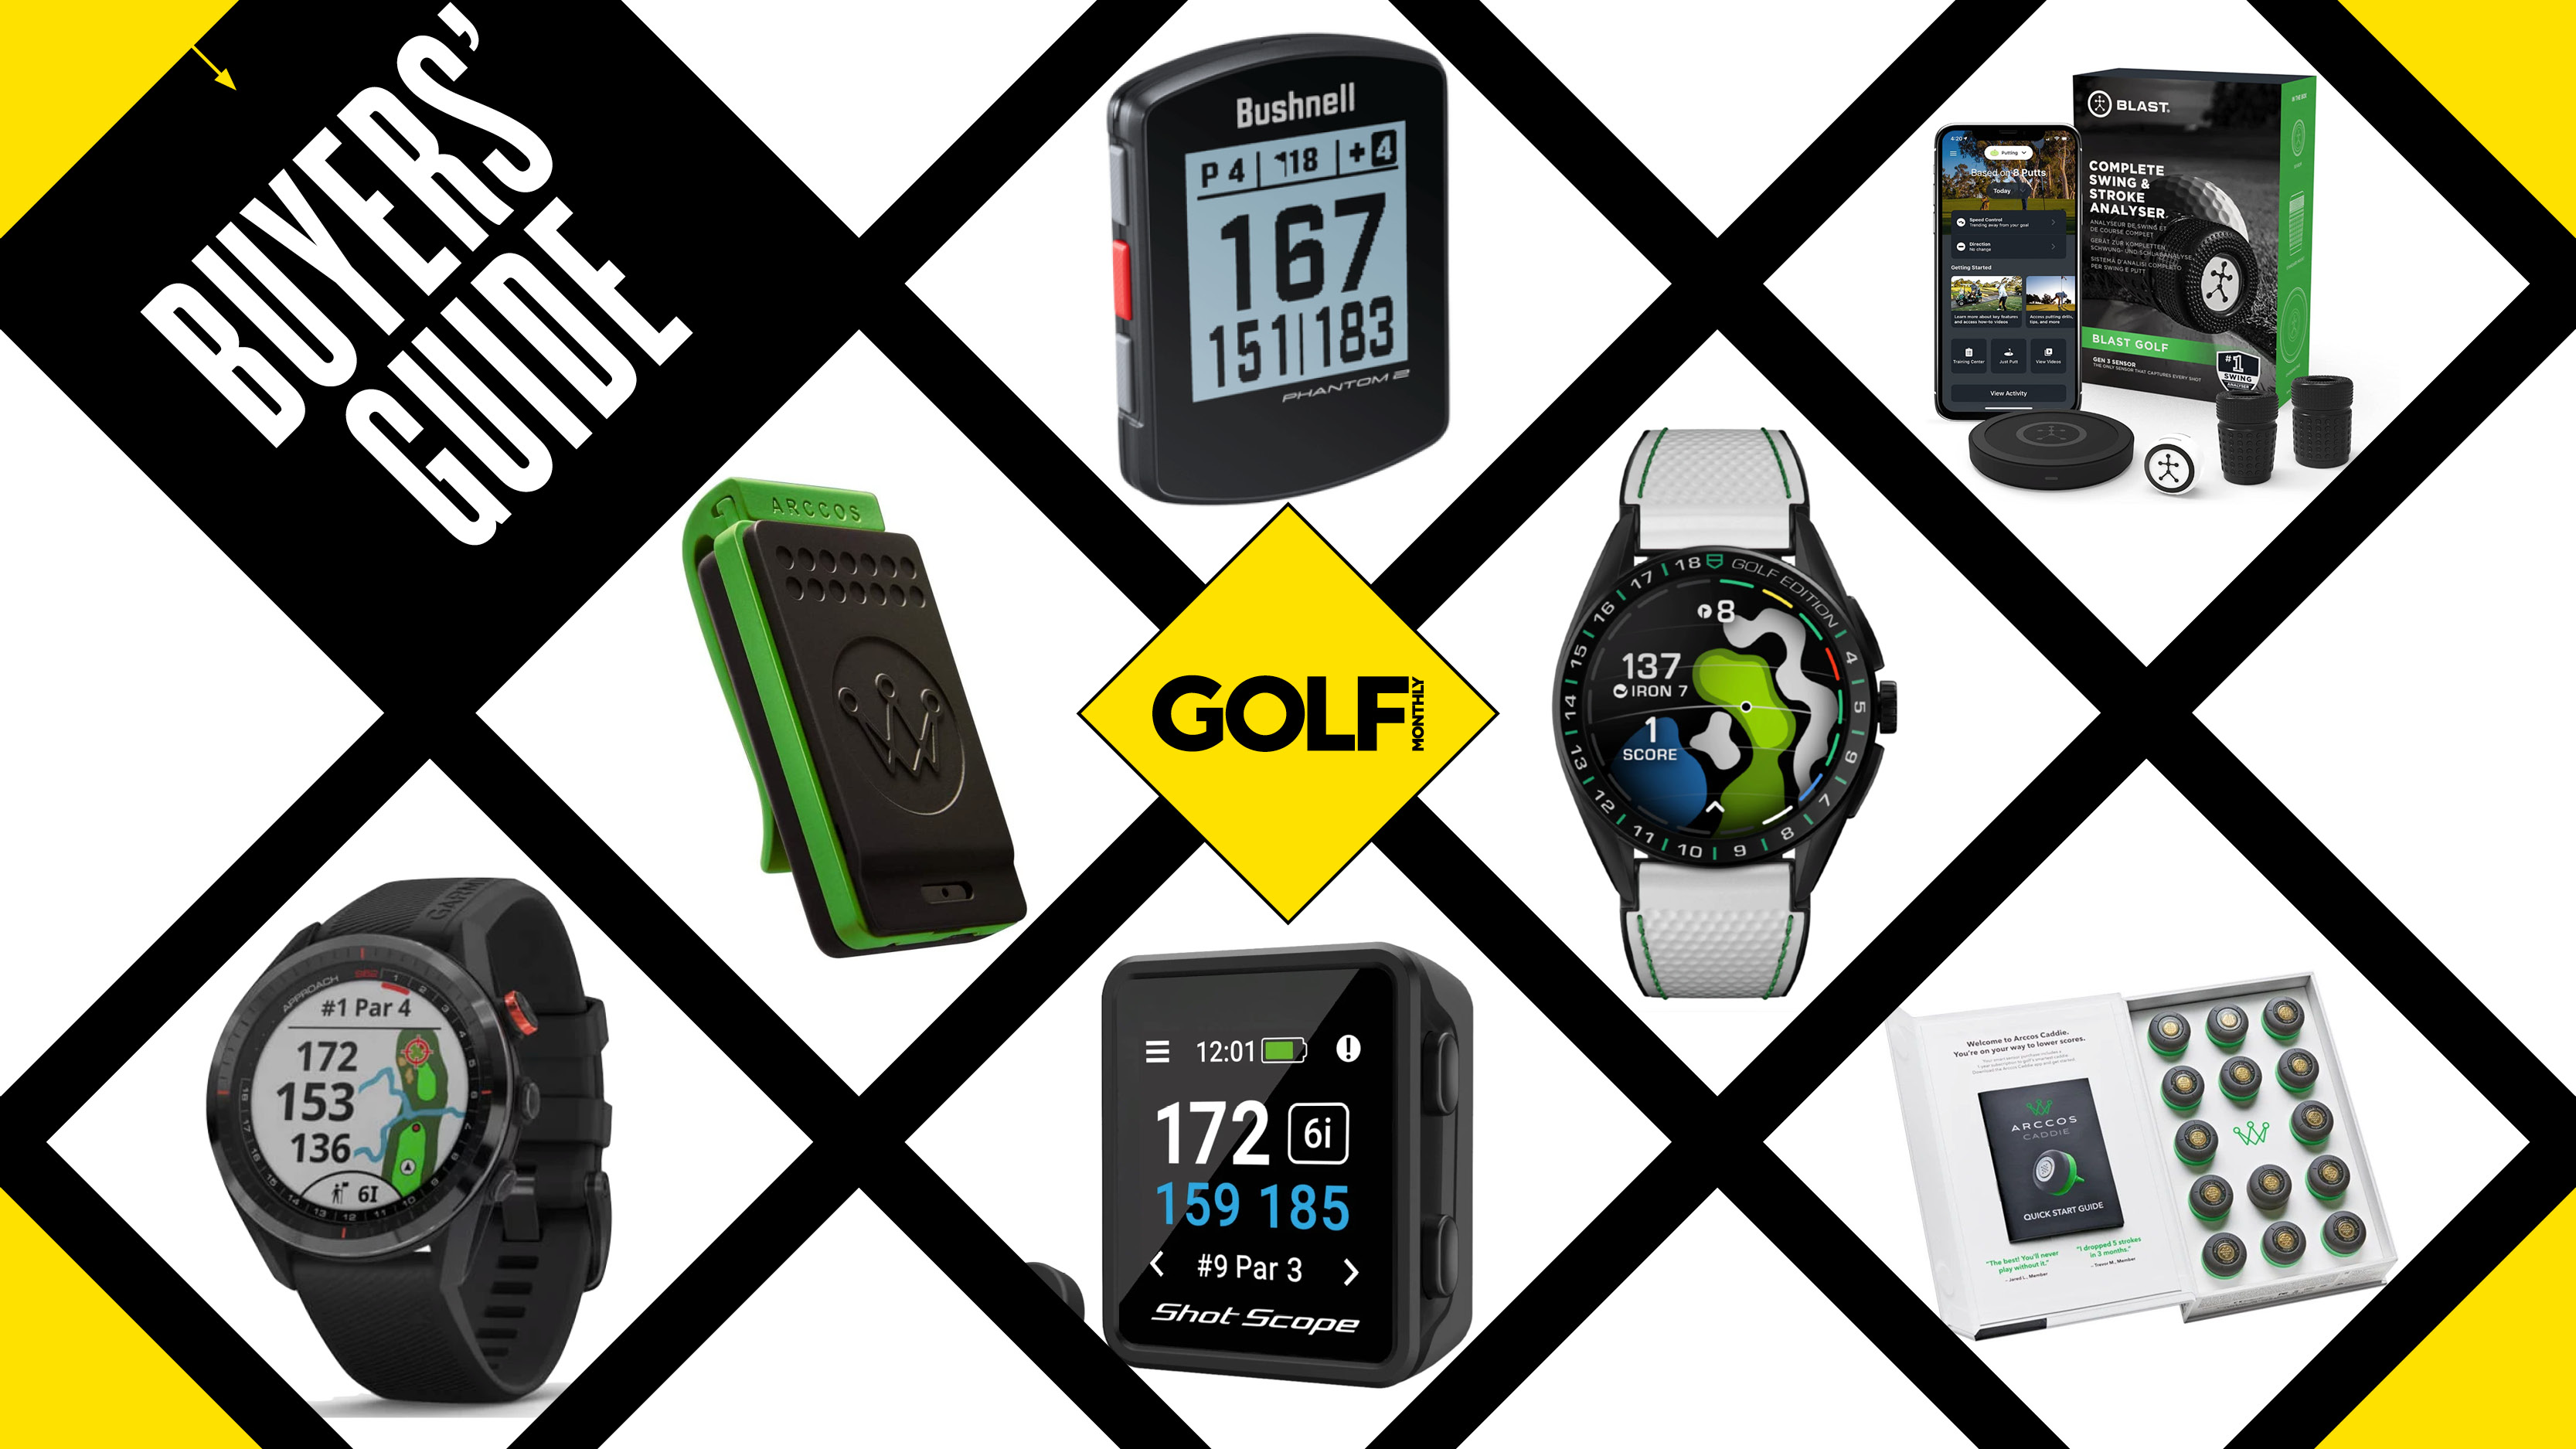 Golf GPS App - My Online Golf Club